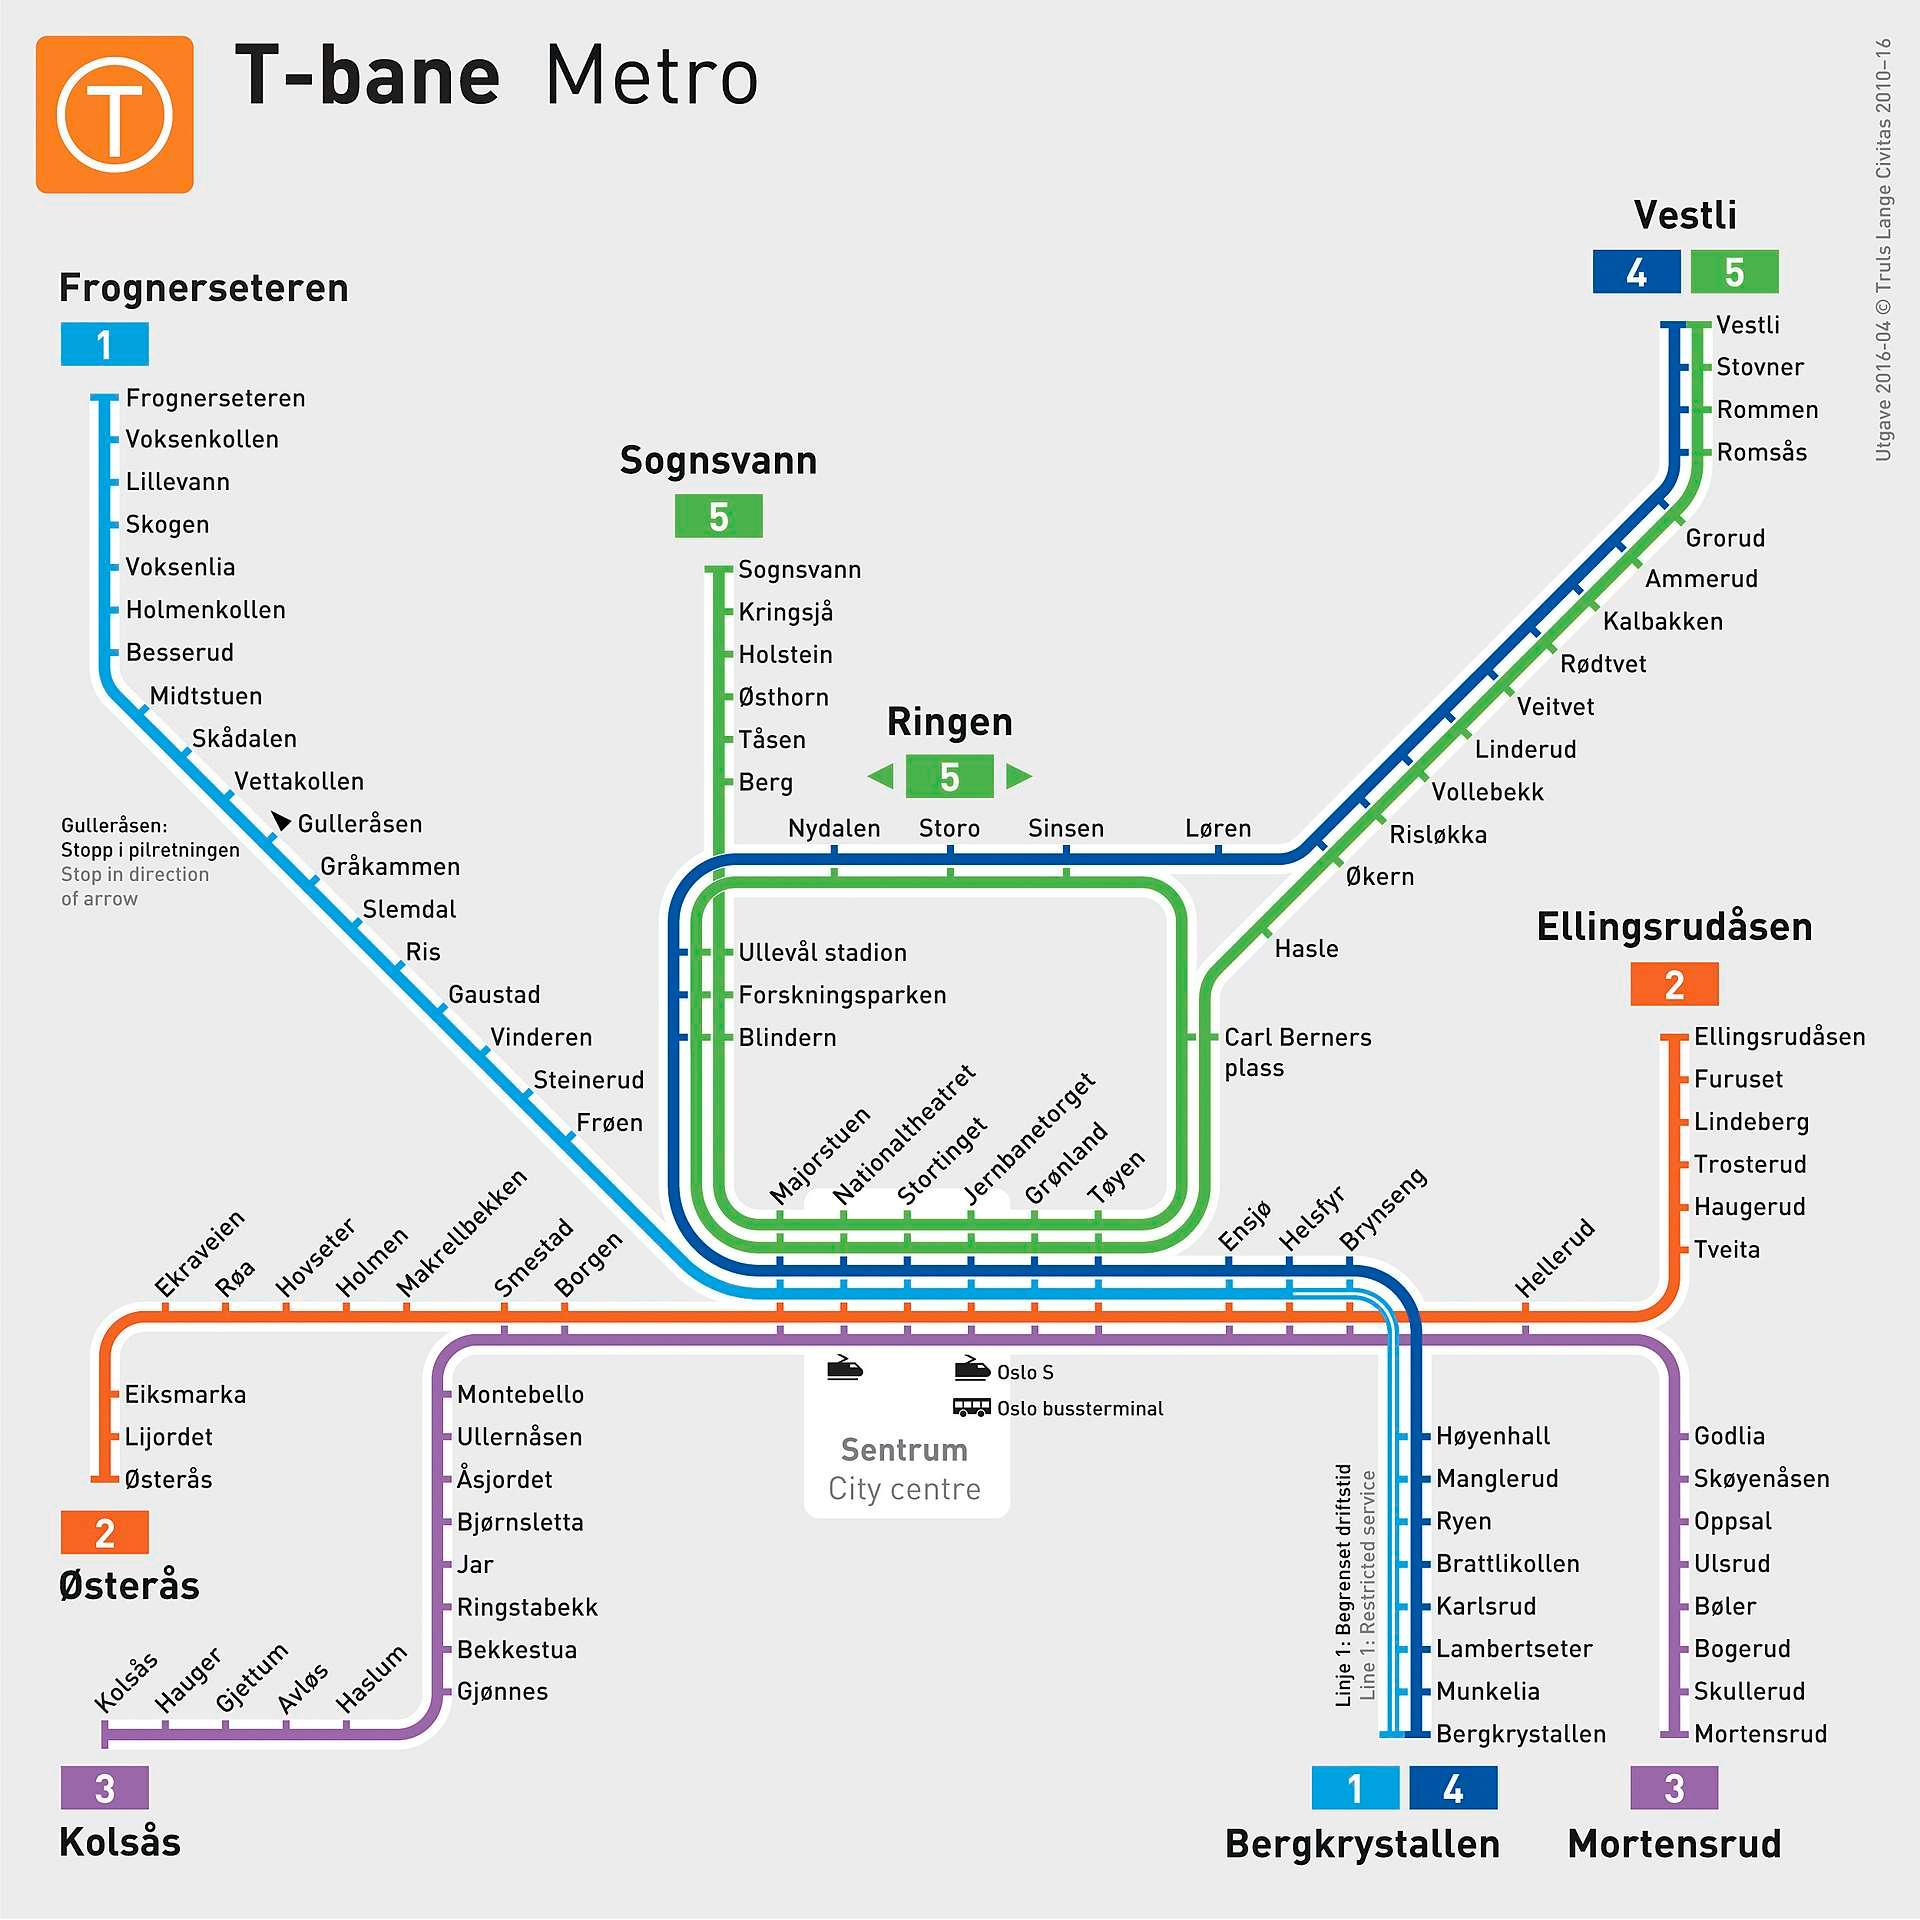 Fra 3. april vil T-banekartet i Oslo se slik ut. Det betyr også endrede avgangstider på T-banen og enkelte busslinjer.